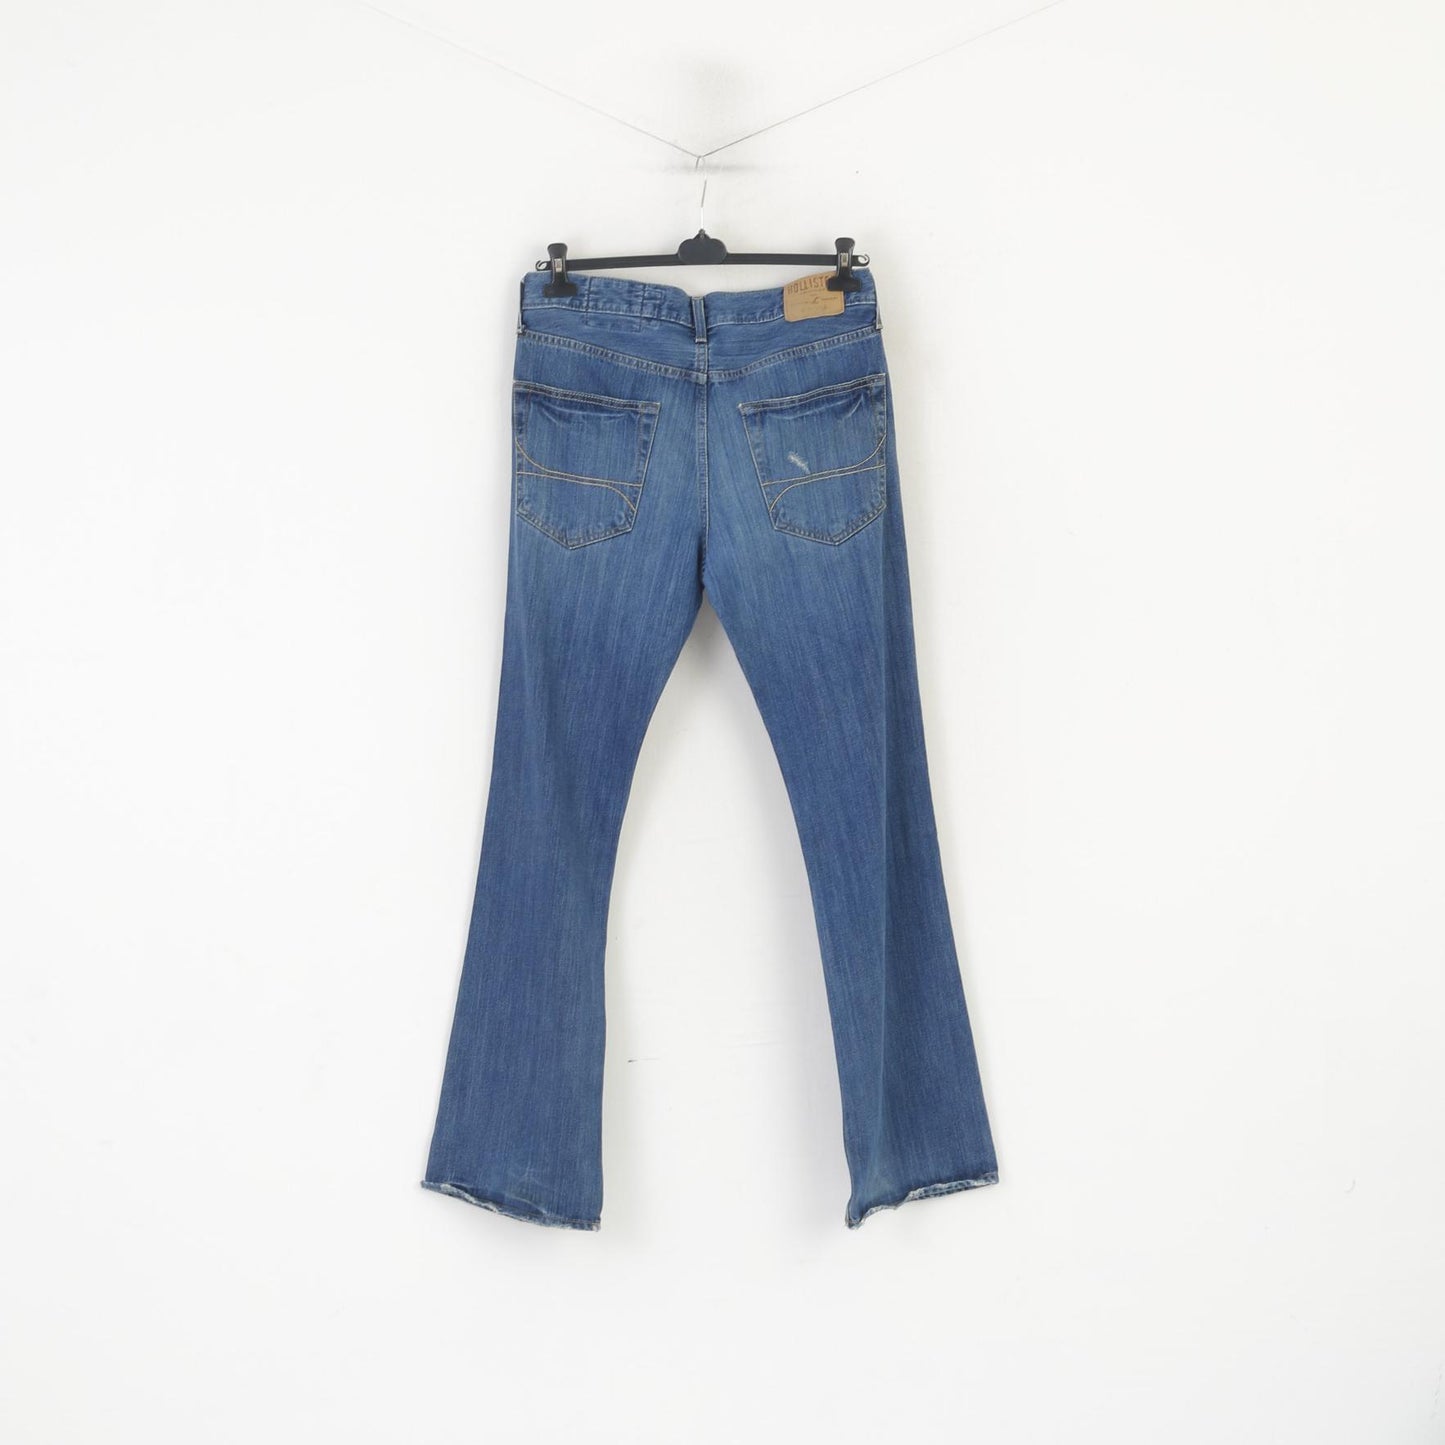 Hollister California Men 32 Jeans Trousers Navy Blue Cotton Classic Denim Pants